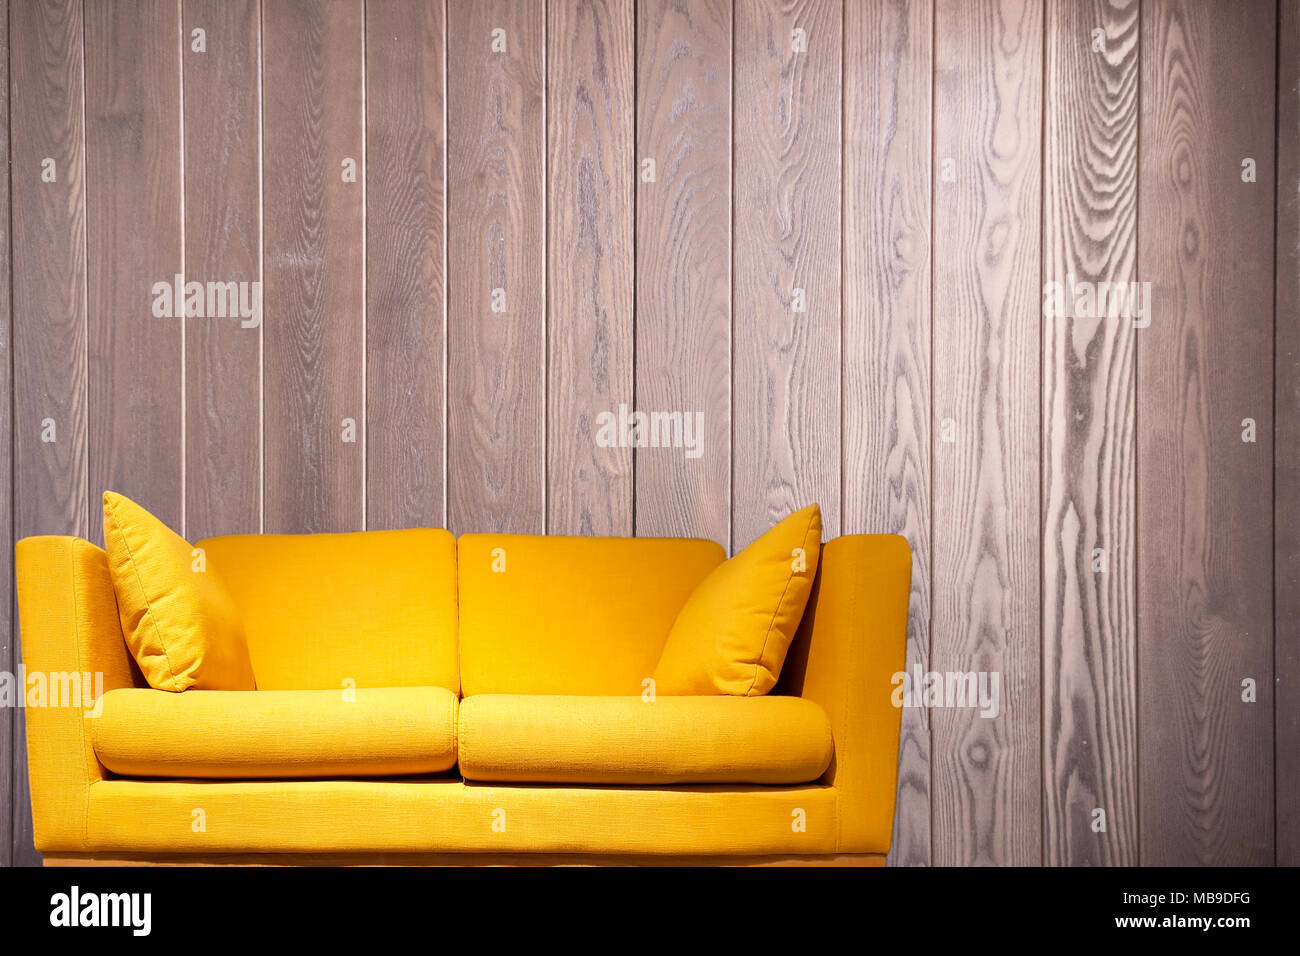 Gelbe Sofa vor eine Holzwand mit Kopie Raum Hintergrund Stockfotografie -  Alamy